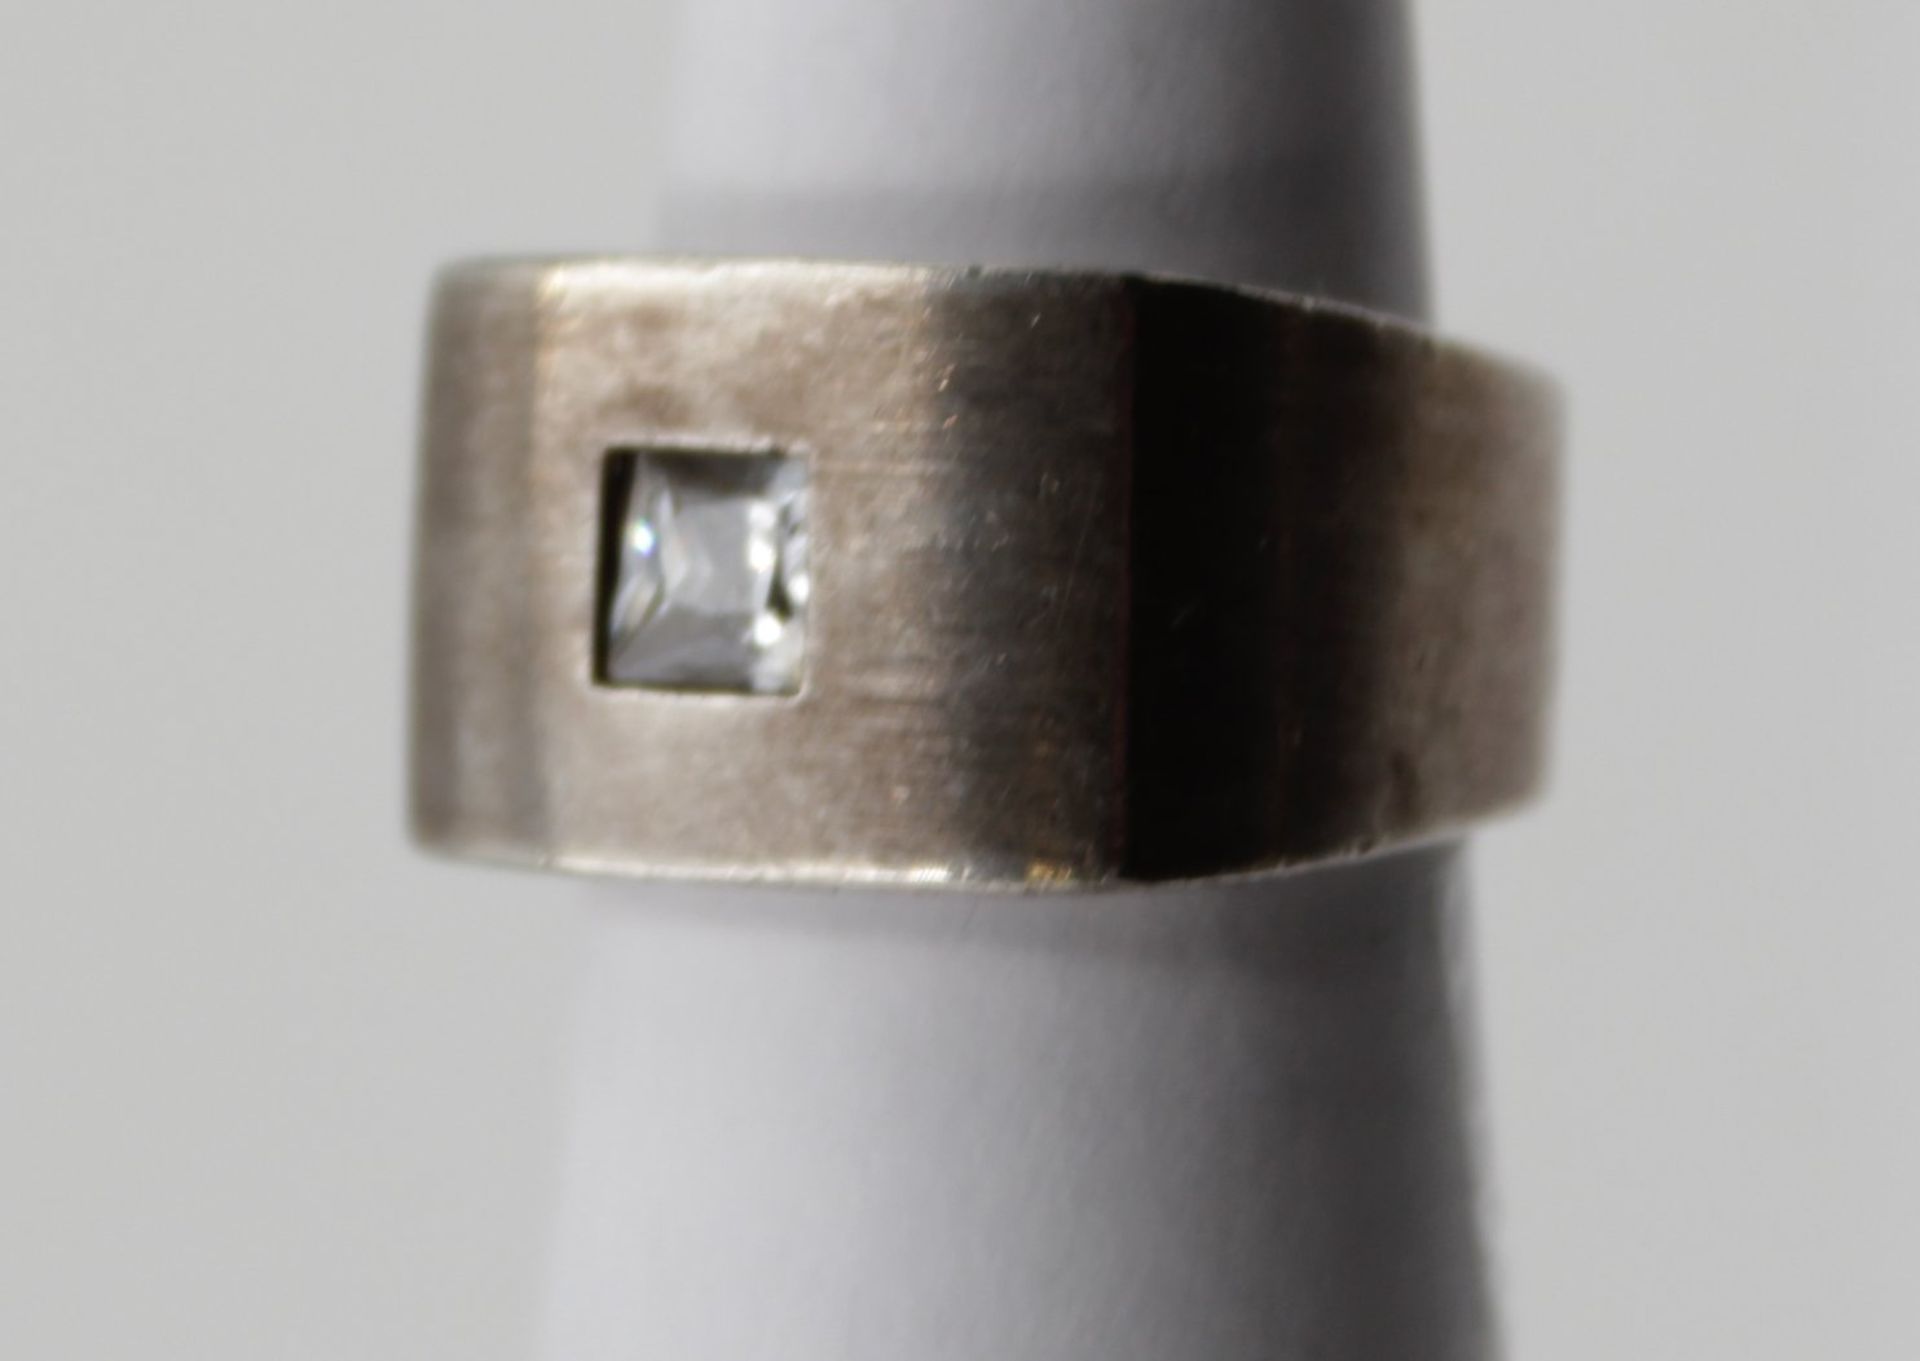 schwerer 925er Silber-Ring, klarer Solitärstein, 11,2gr., RG 55. - Image 2 of 5